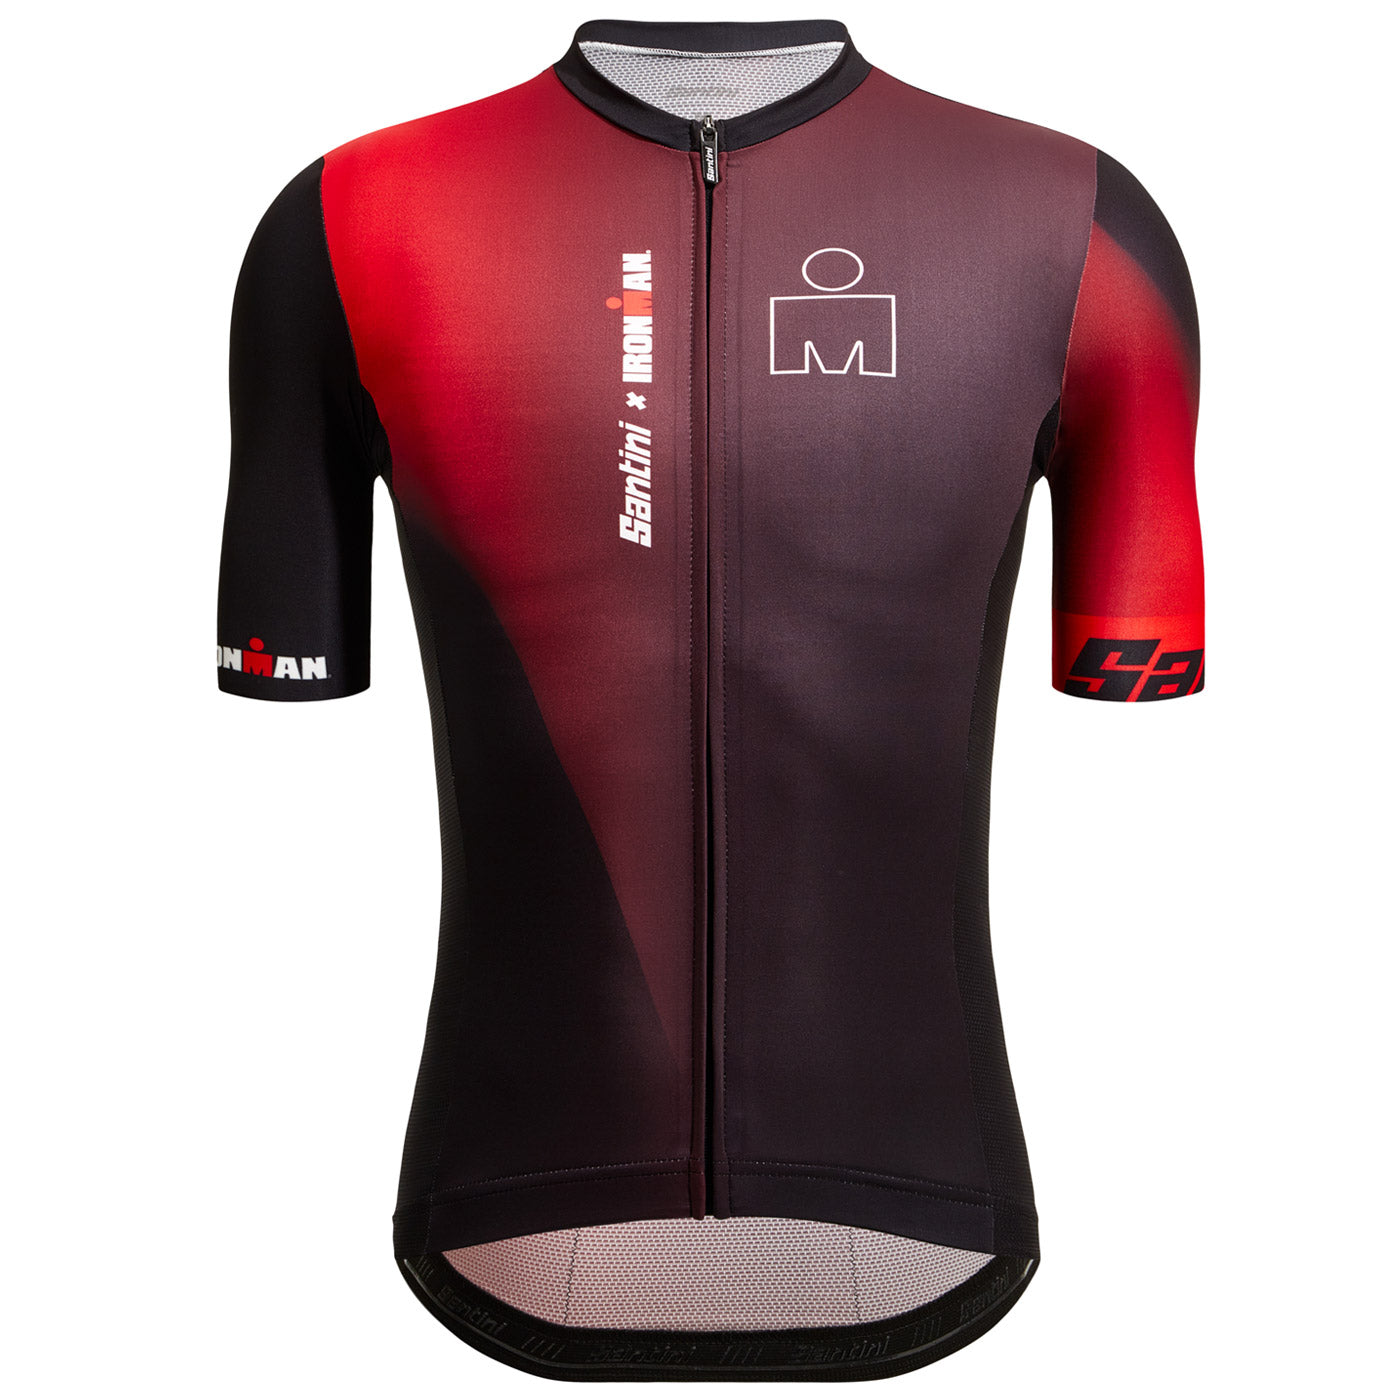 Santini Ironman Ikaika jersey | All4cycling